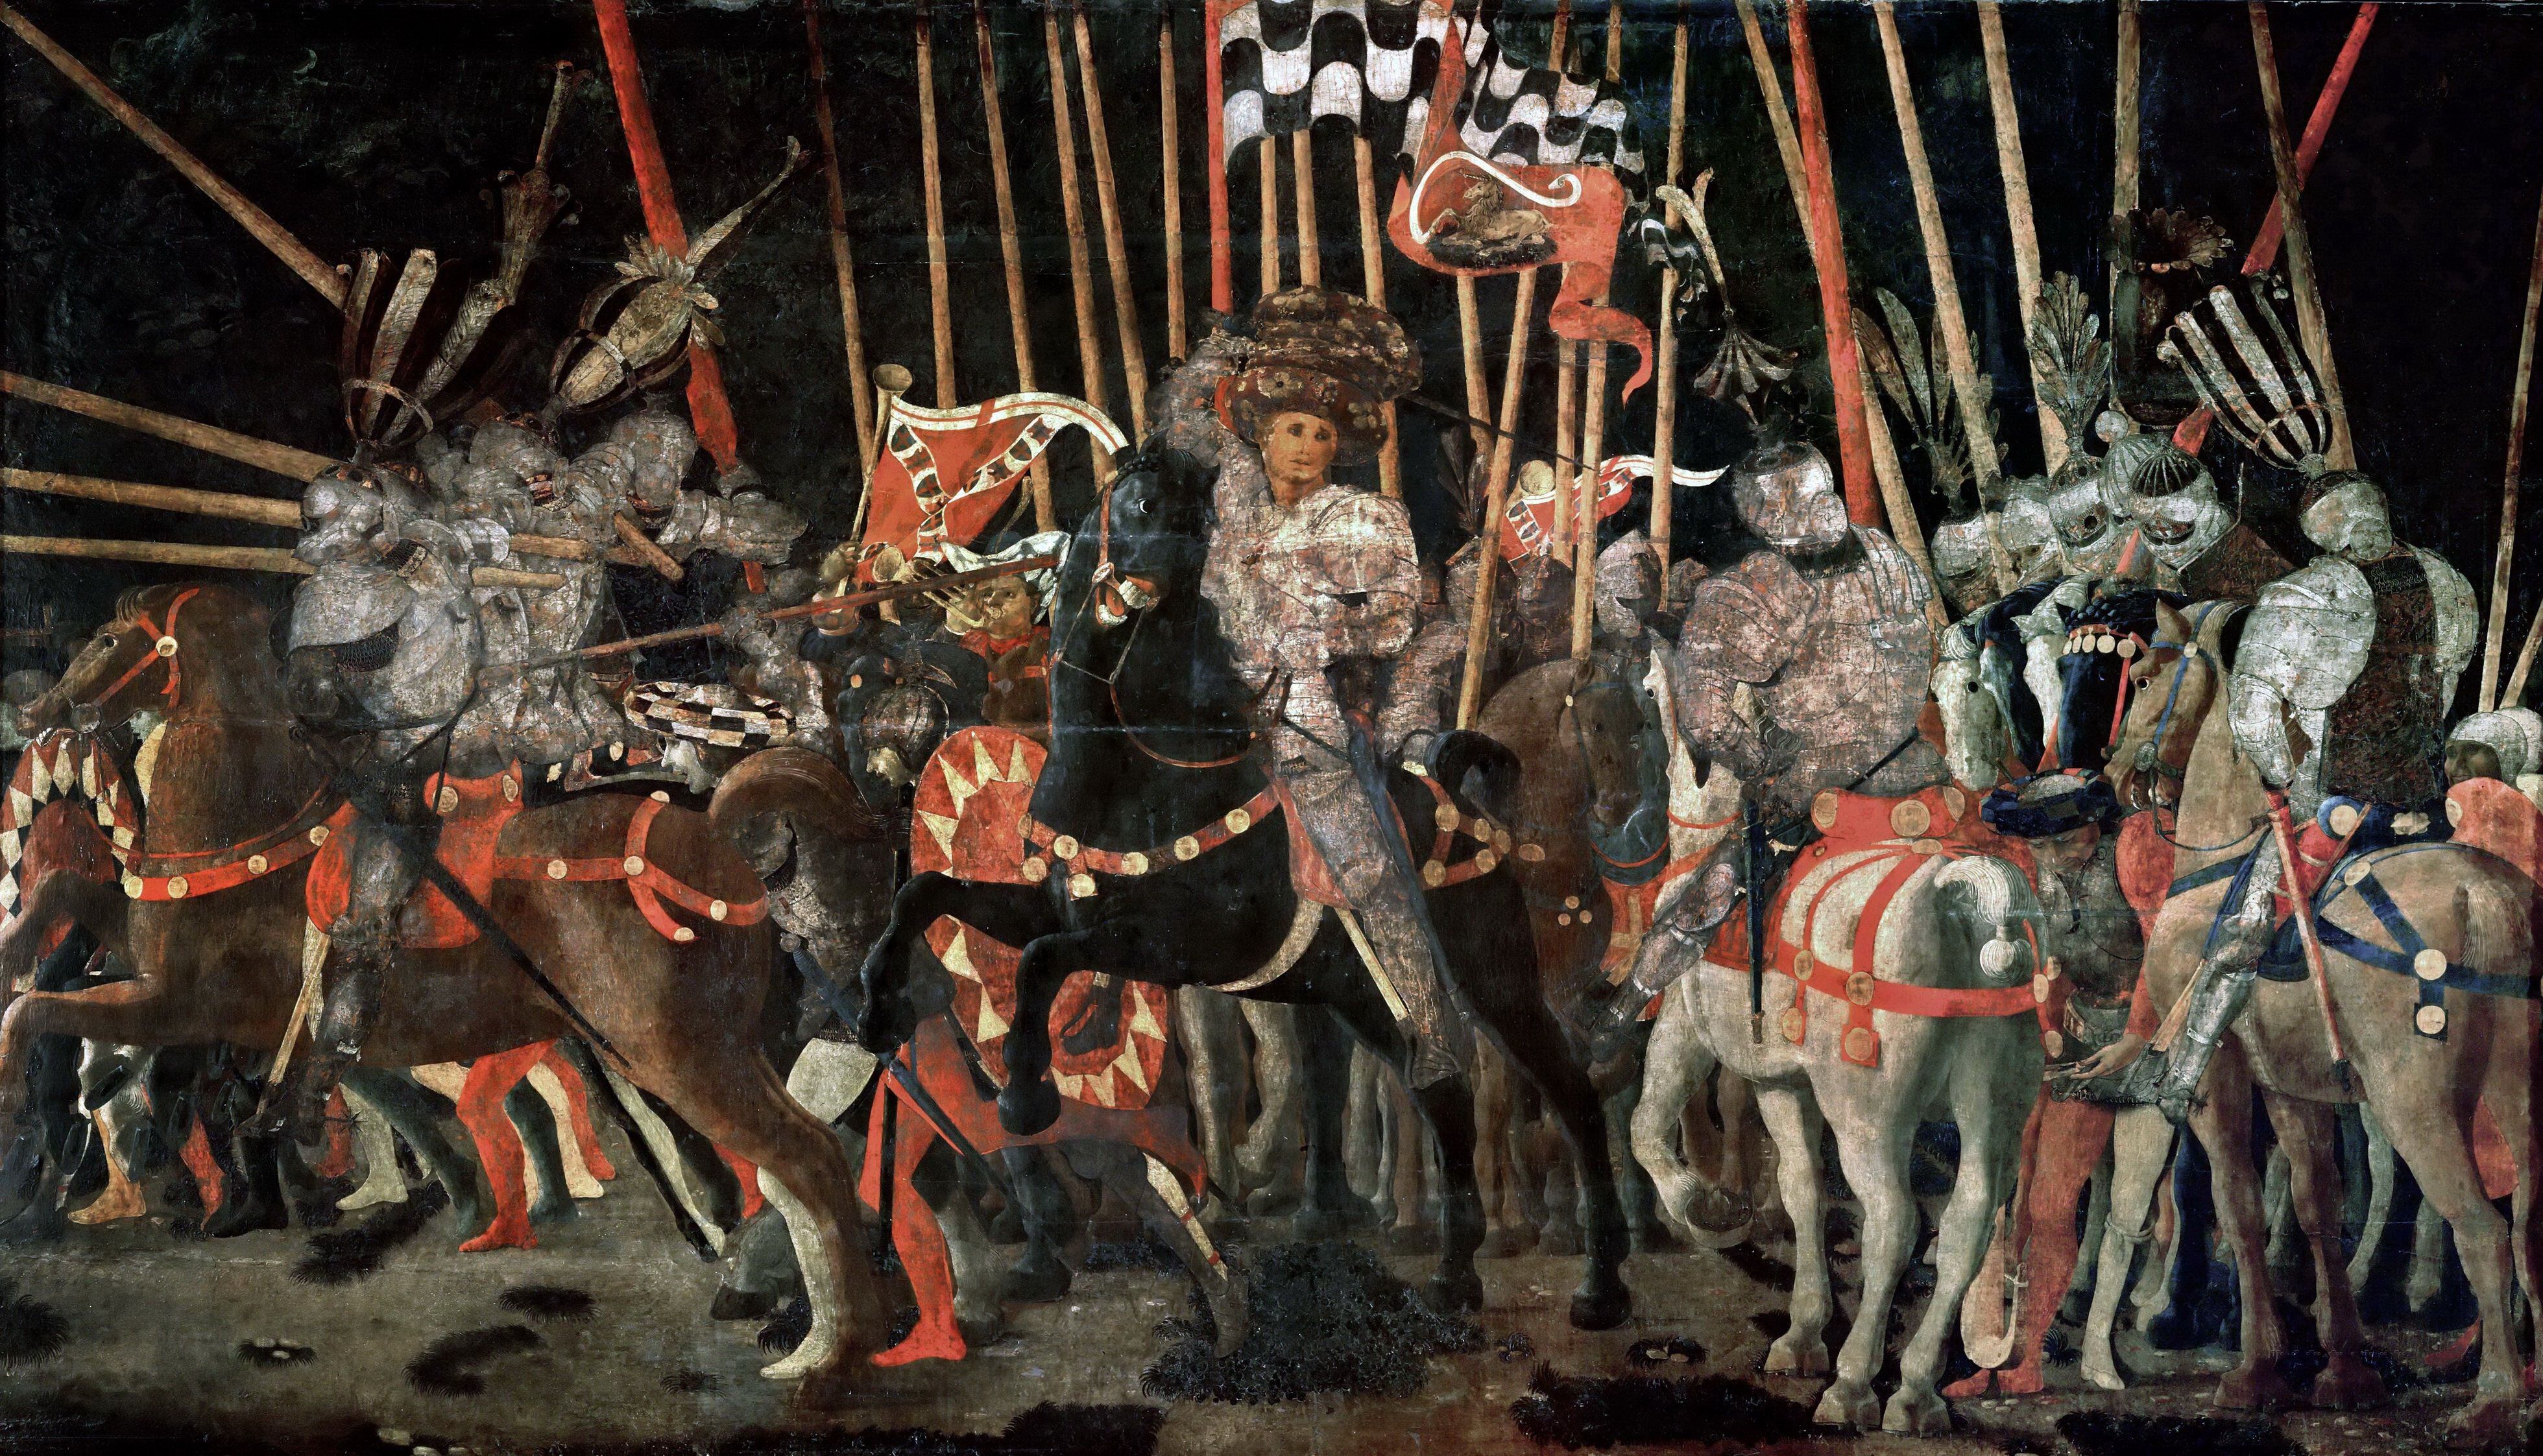 La batalla de San Romano' (1456), de Paolo Uccello, se expone en el Museo del Louvre.